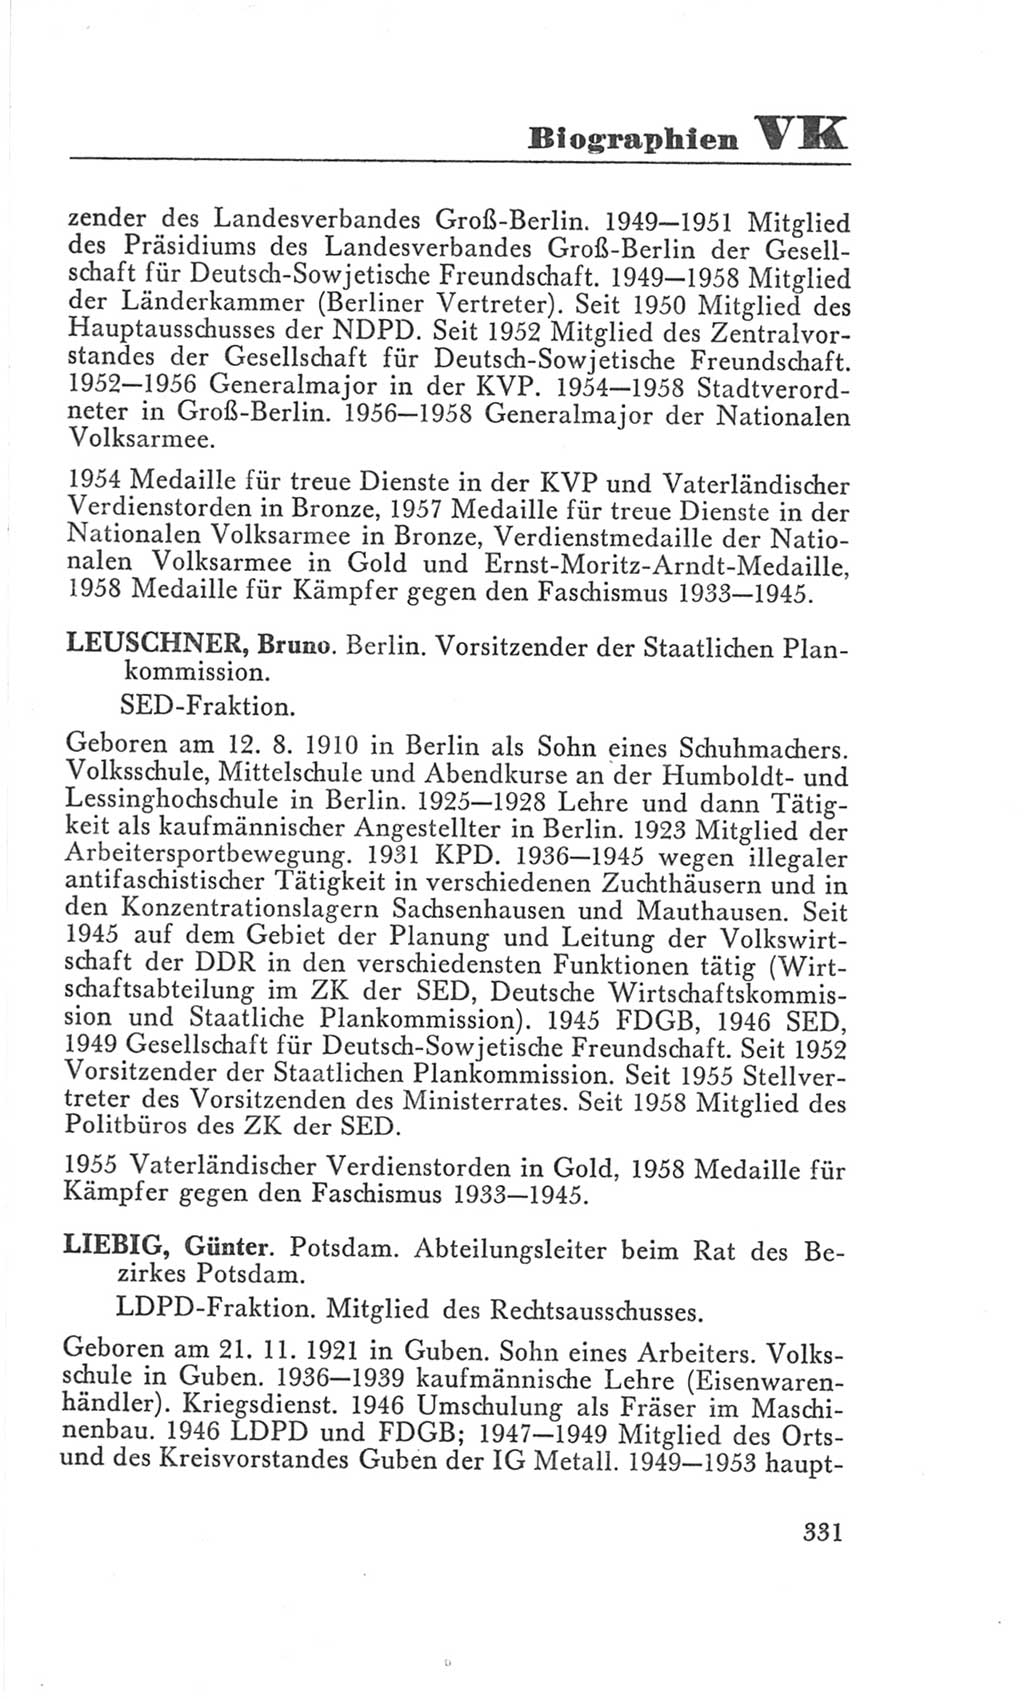 Handbuch der Volkskammer (VK) der Deutschen Demokratischen Republik (DDR), 3. Wahlperiode 1958-1963, Seite 331 (Hdb. VK. DDR 3. WP. 1958-1963, S. 331)